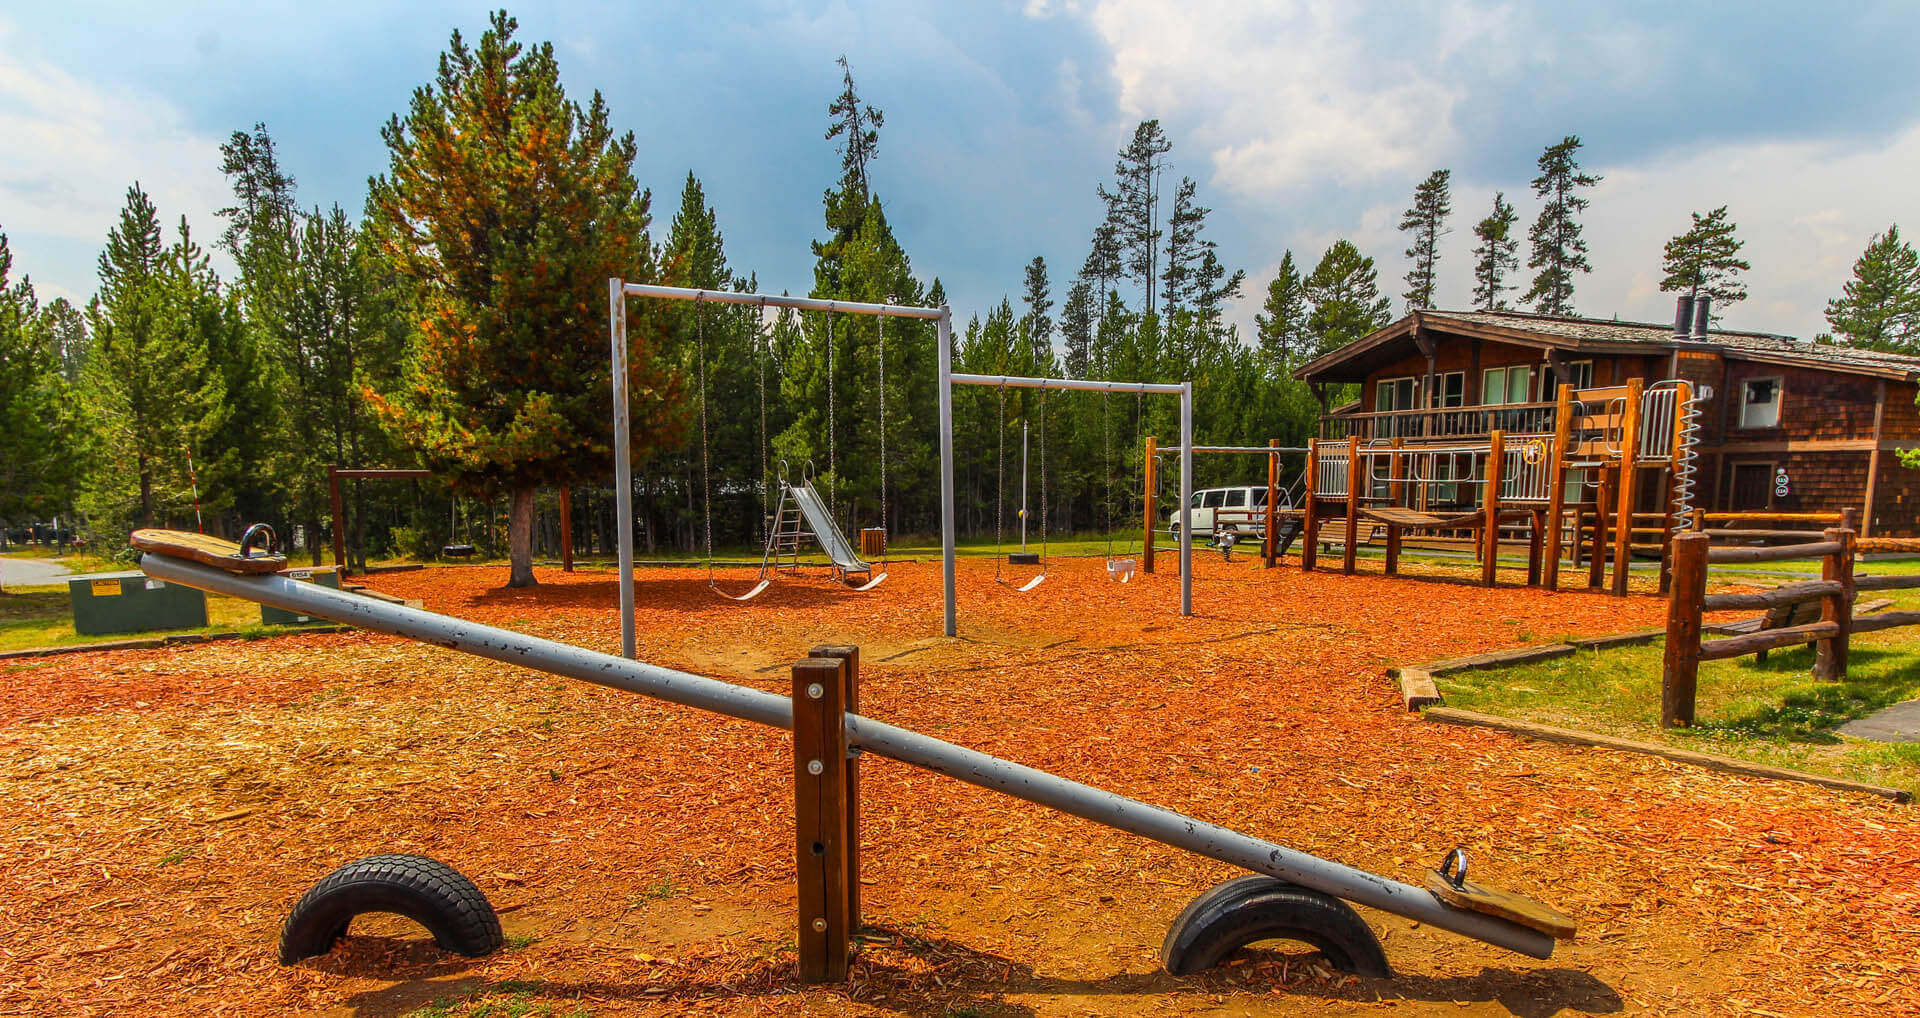 The Timbers Playground